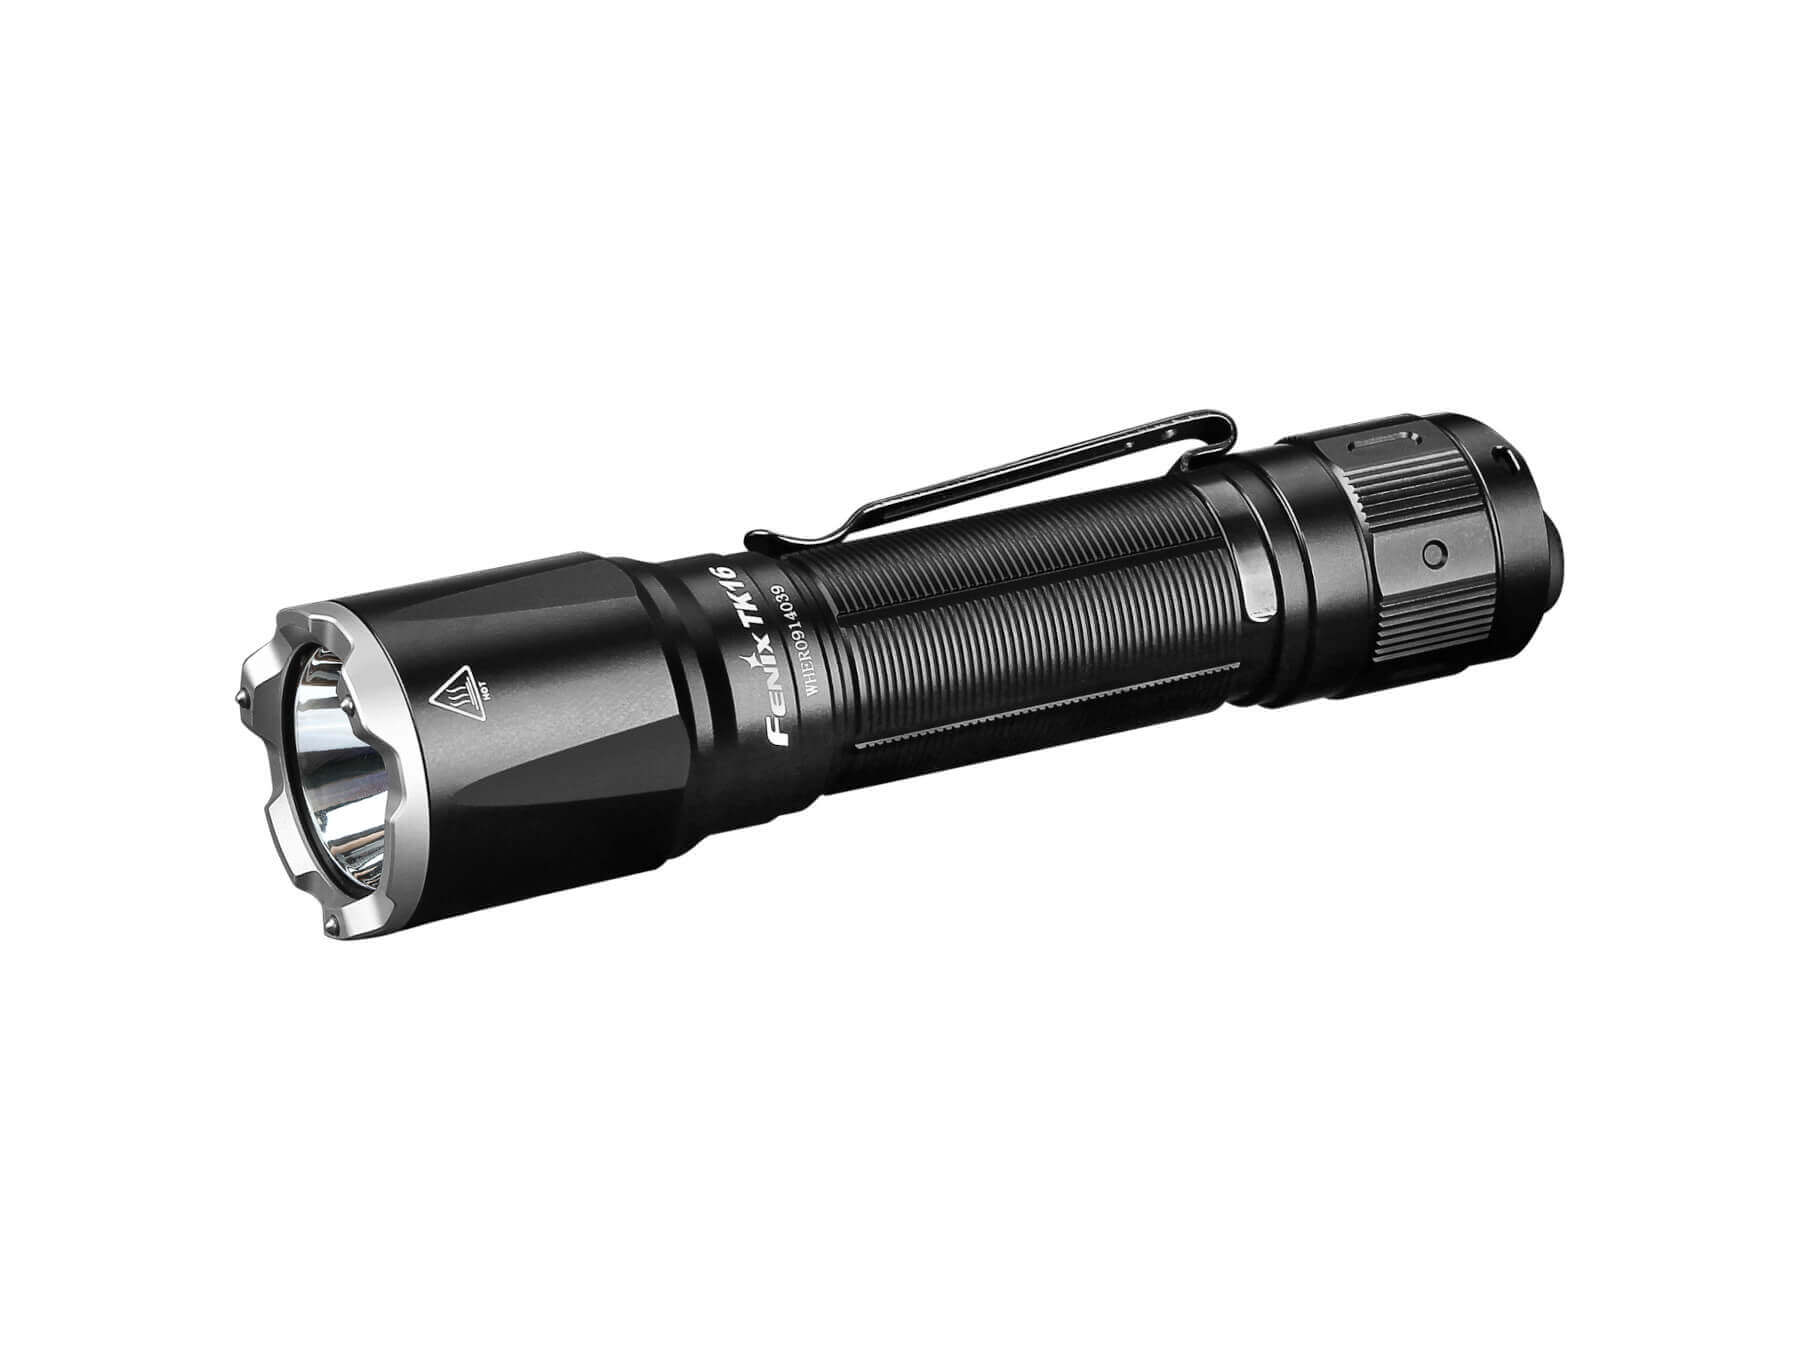 Taschenlampe Fenix TK16 V2.0 liegend mit Gürtelclip